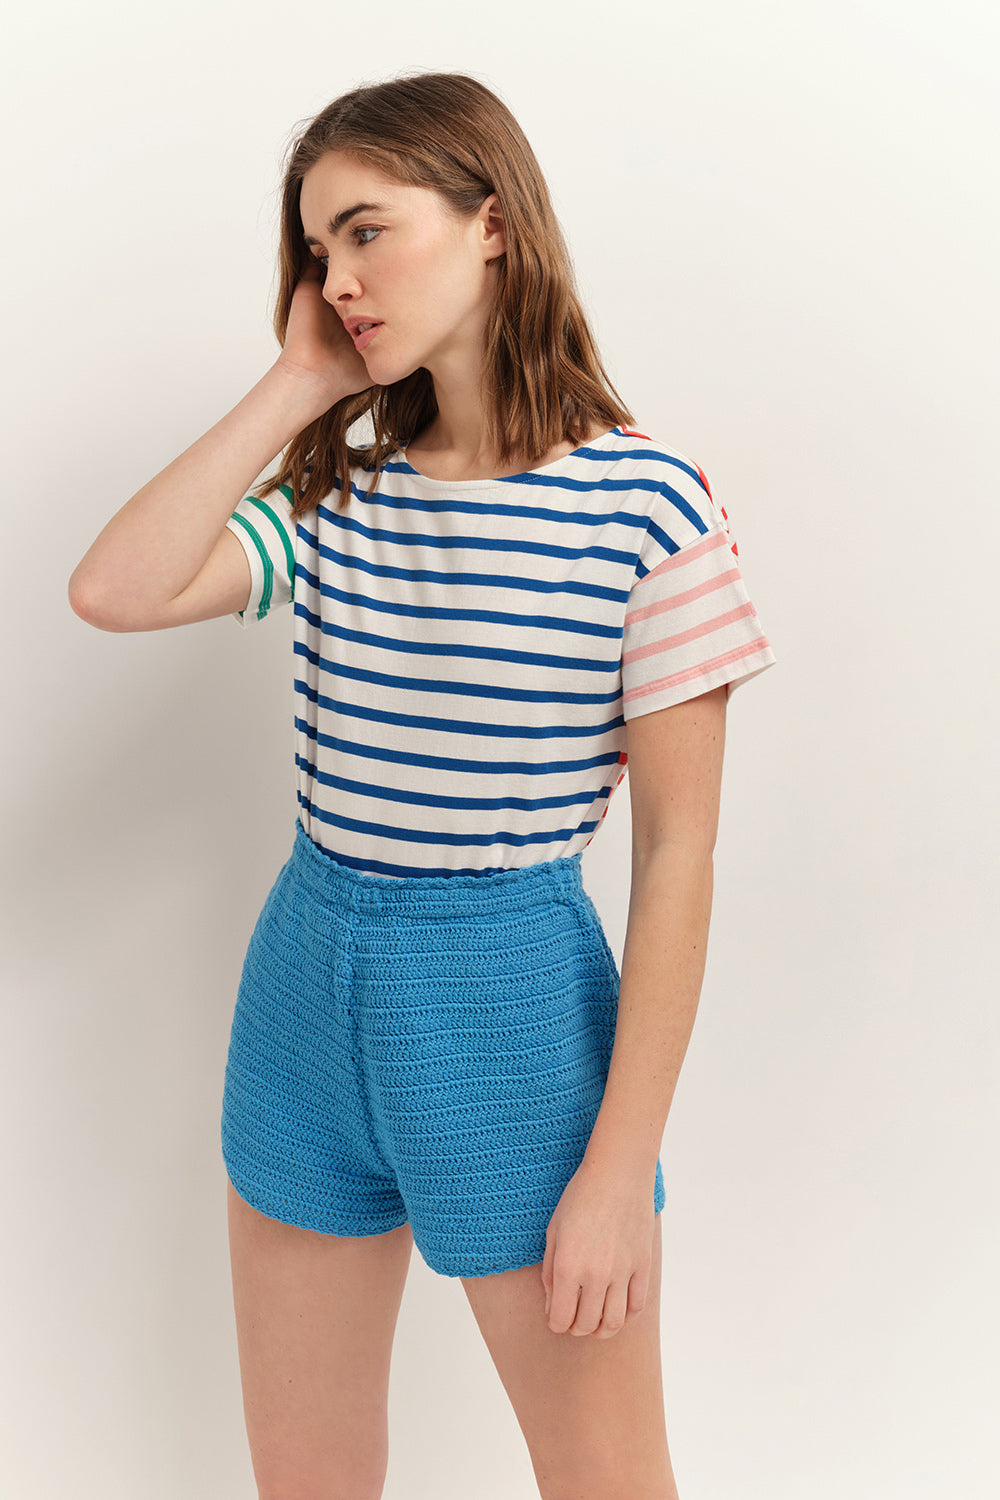 MUSSY - T-shirt marinière à motif rayures couleur